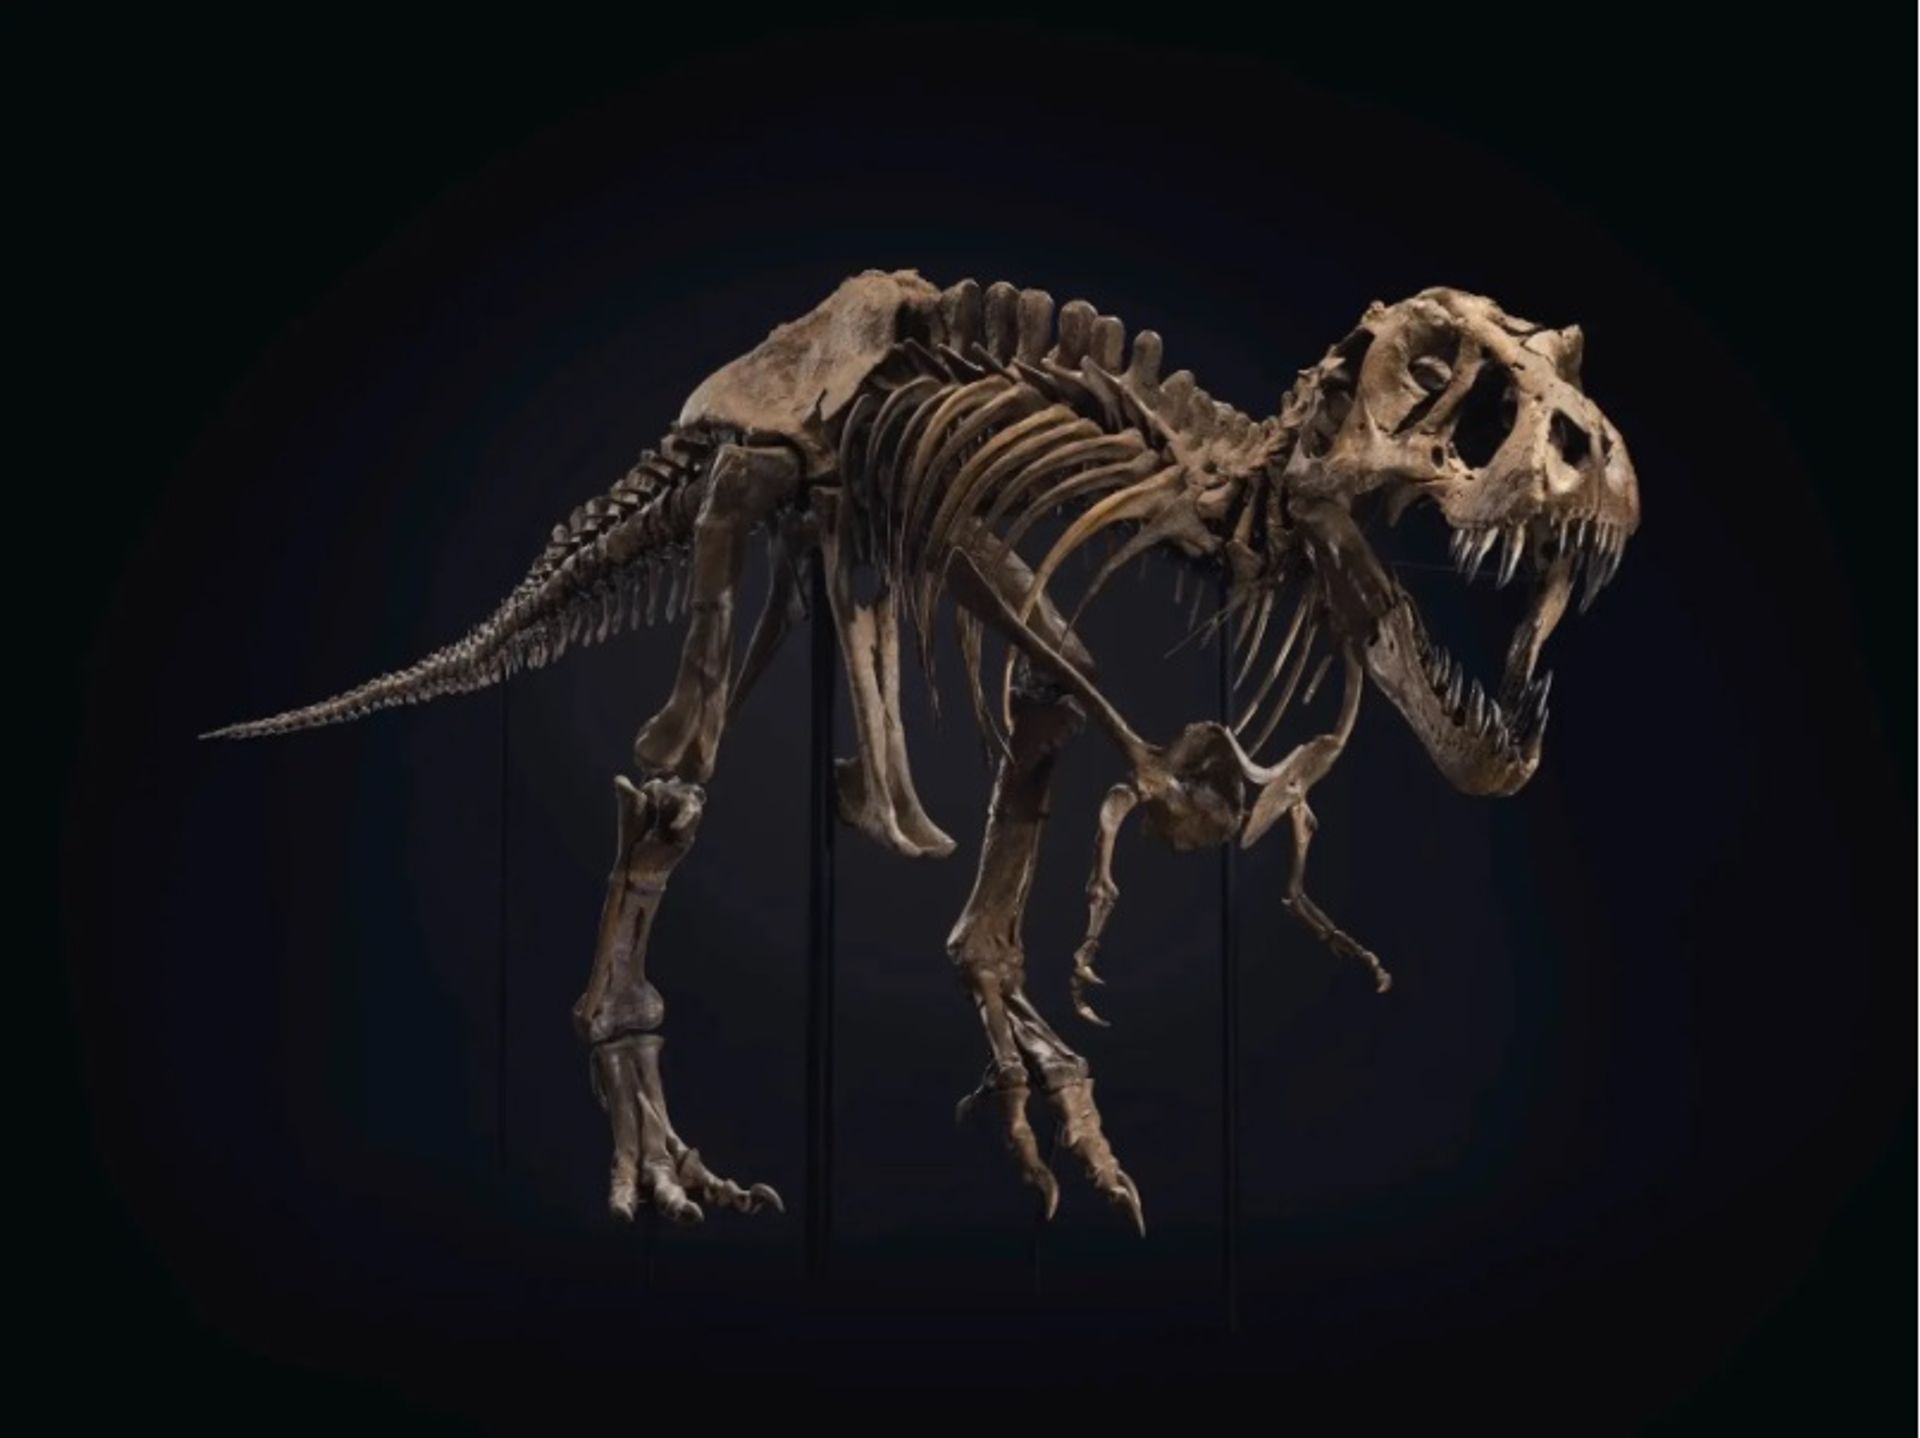 "סטן", שלד טירנוזאורוס רקס, השיג שיא של 32 מיליון דולר במכירה פומבית של כריסטי'ס בניו יורק באוקטובר 2020.

באדיבות Christie's Images Ltd.